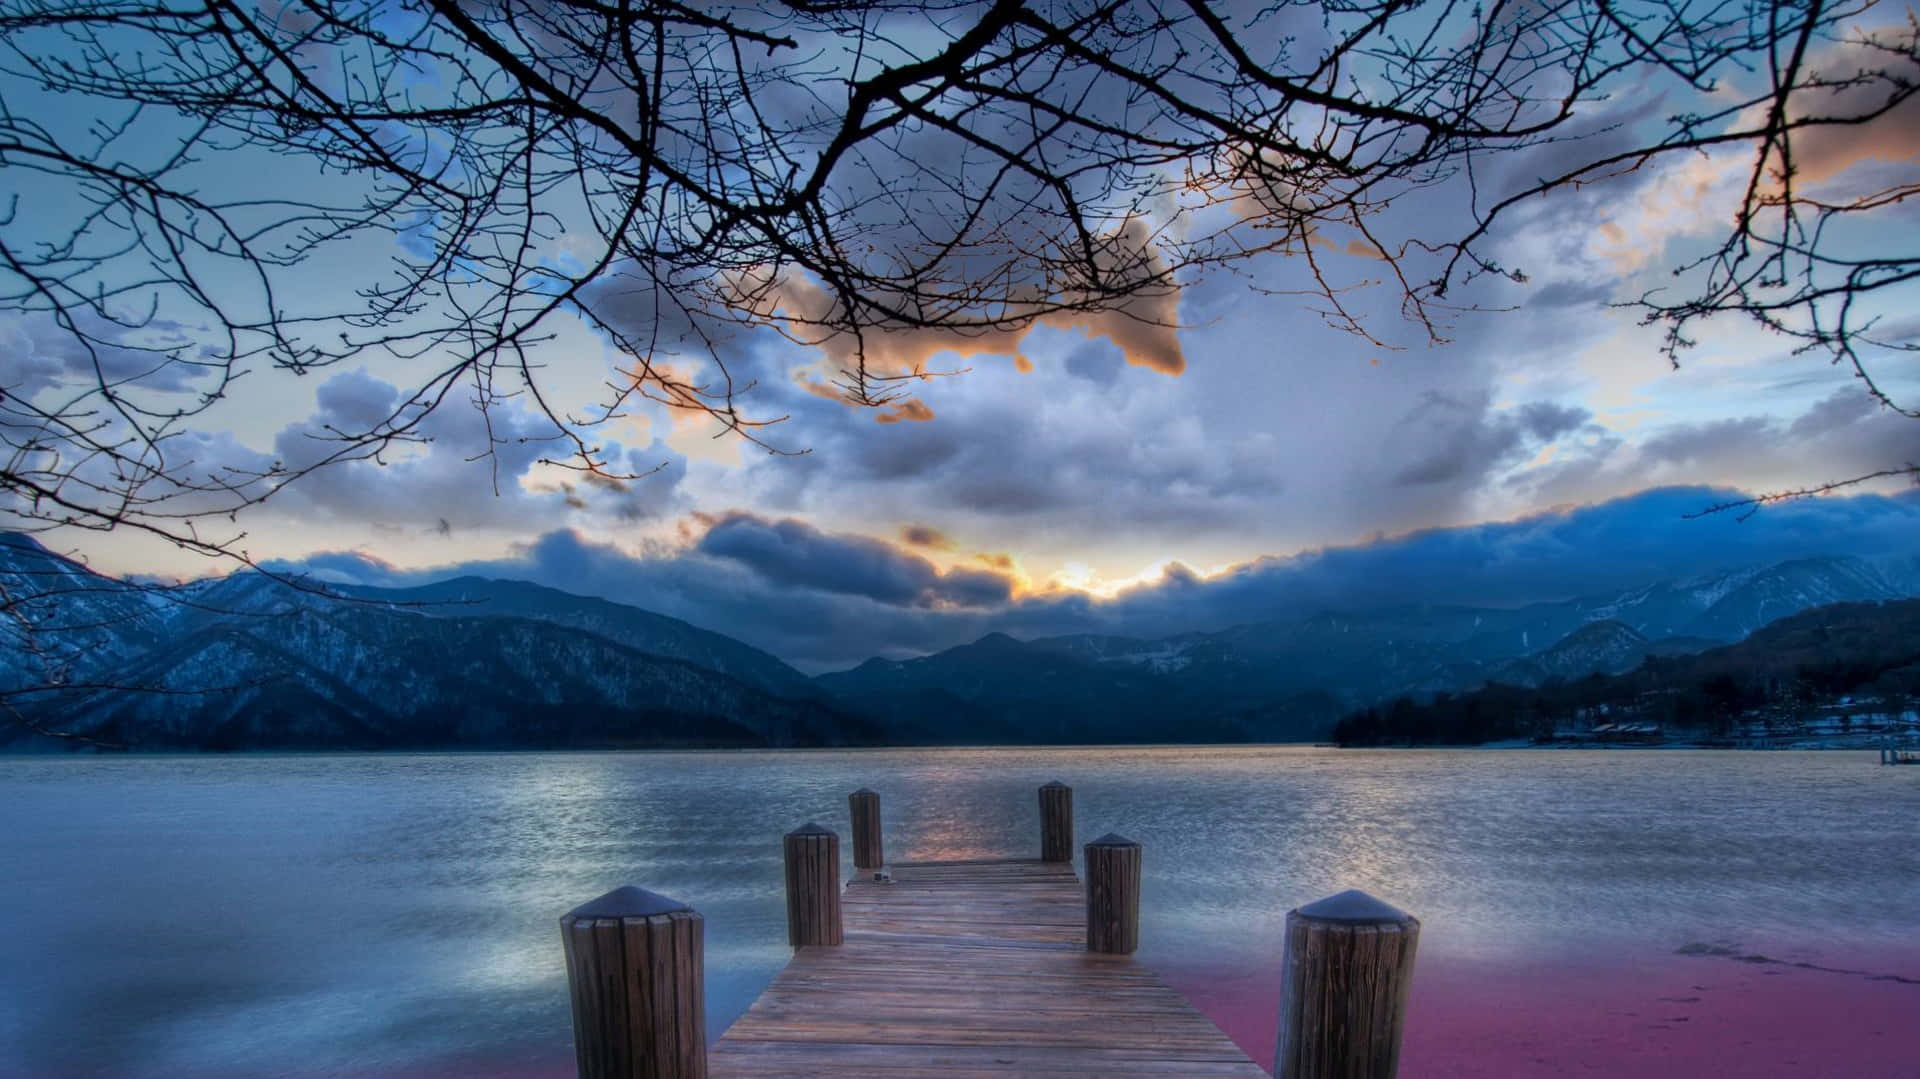 Disfrutade La Tranquilidad Y Belleza De Un Sereno Lago En Las Montañas.